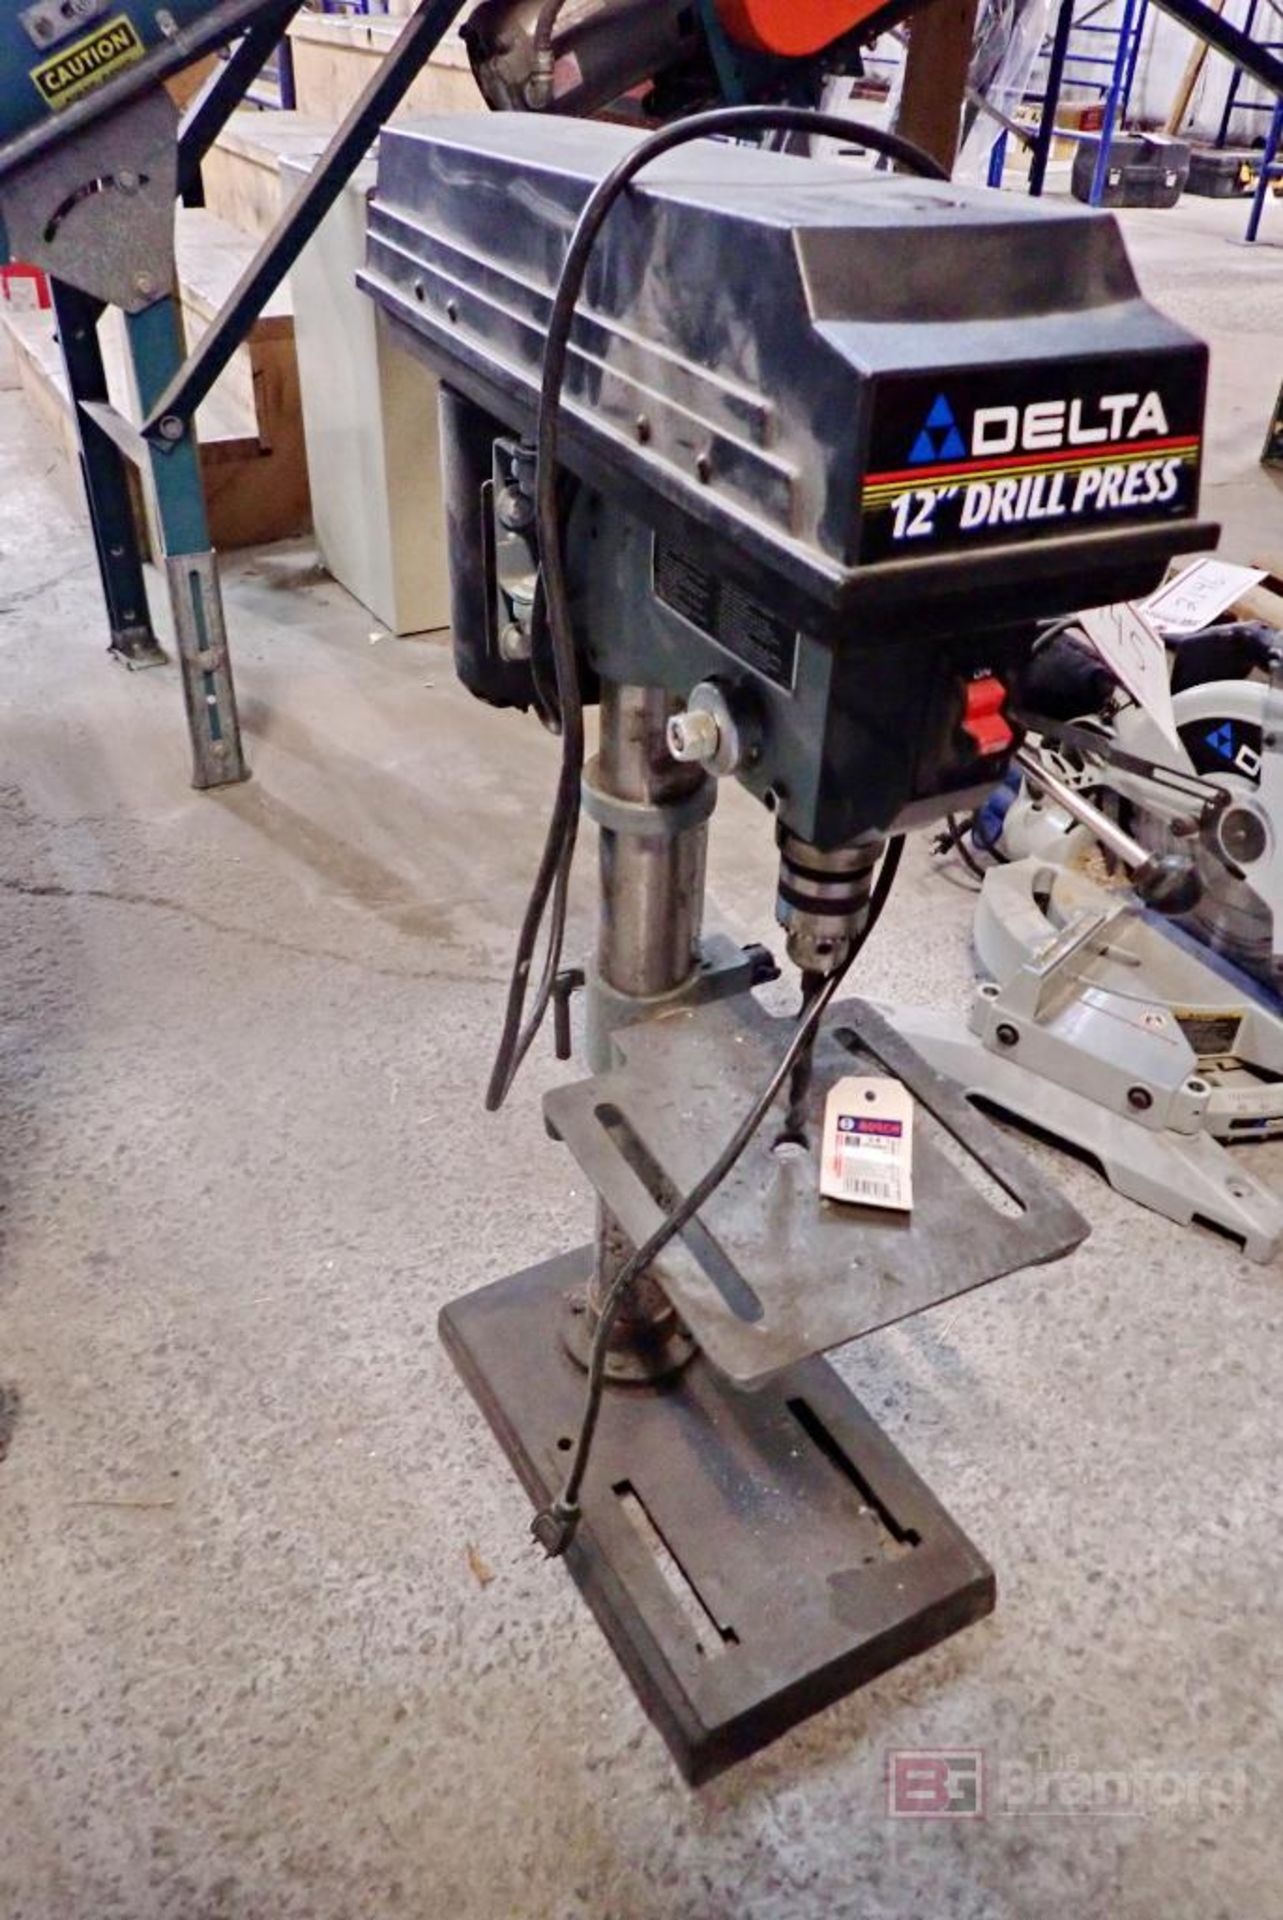 Delta 11-990 12" Drill Press